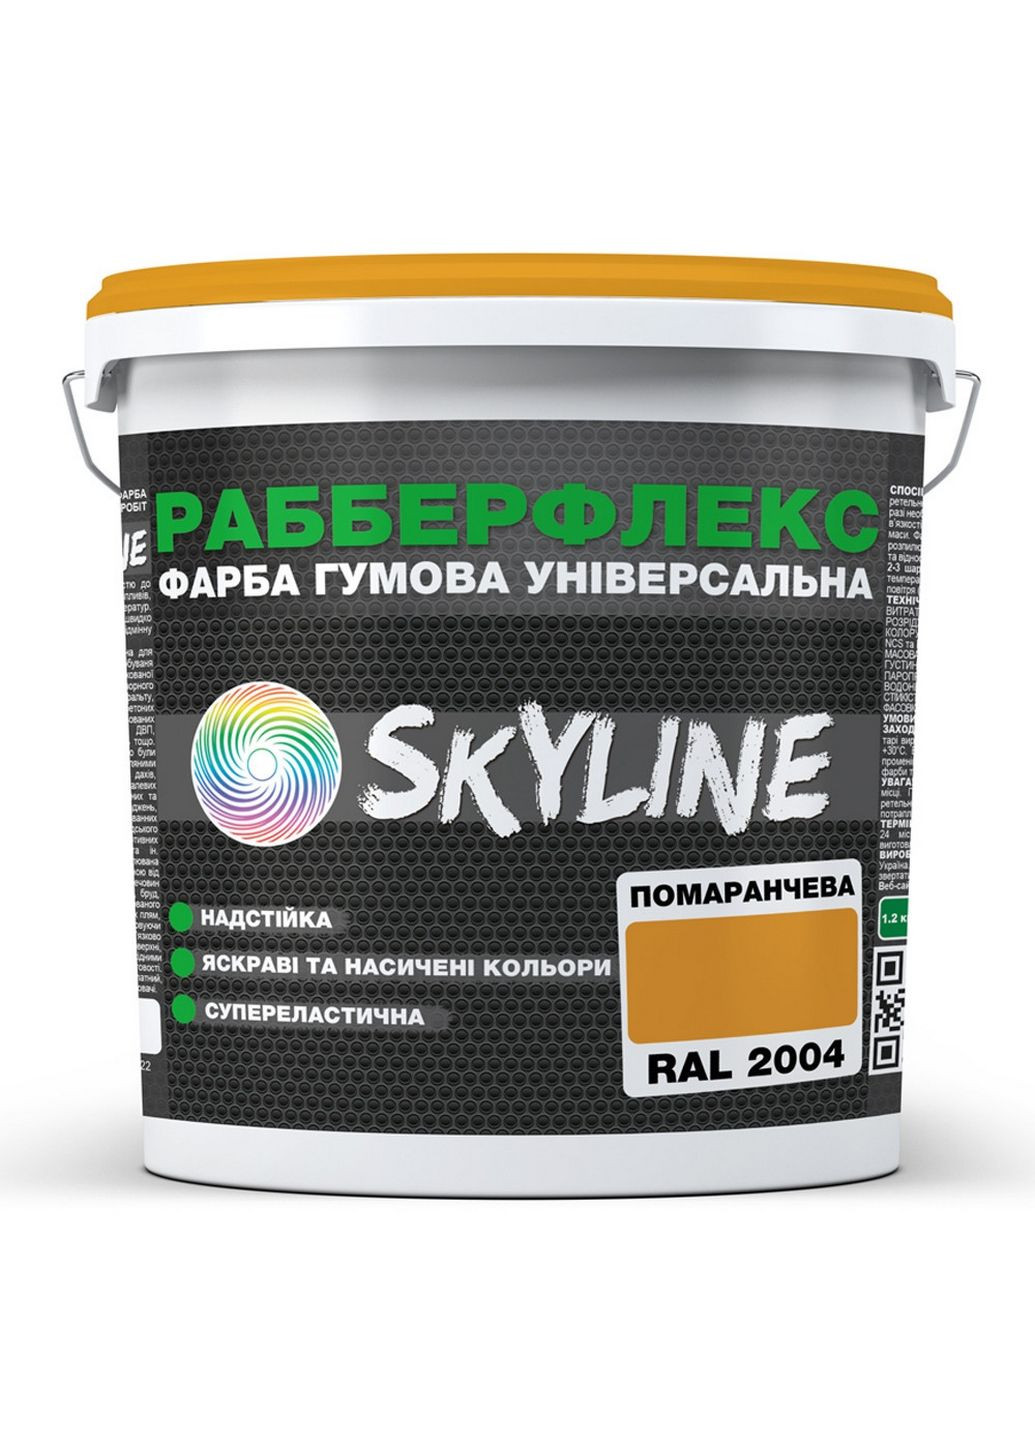 Надстійка фарба гумова супереластична «РабберФлекс» 6 кг SkyLine (289463382)